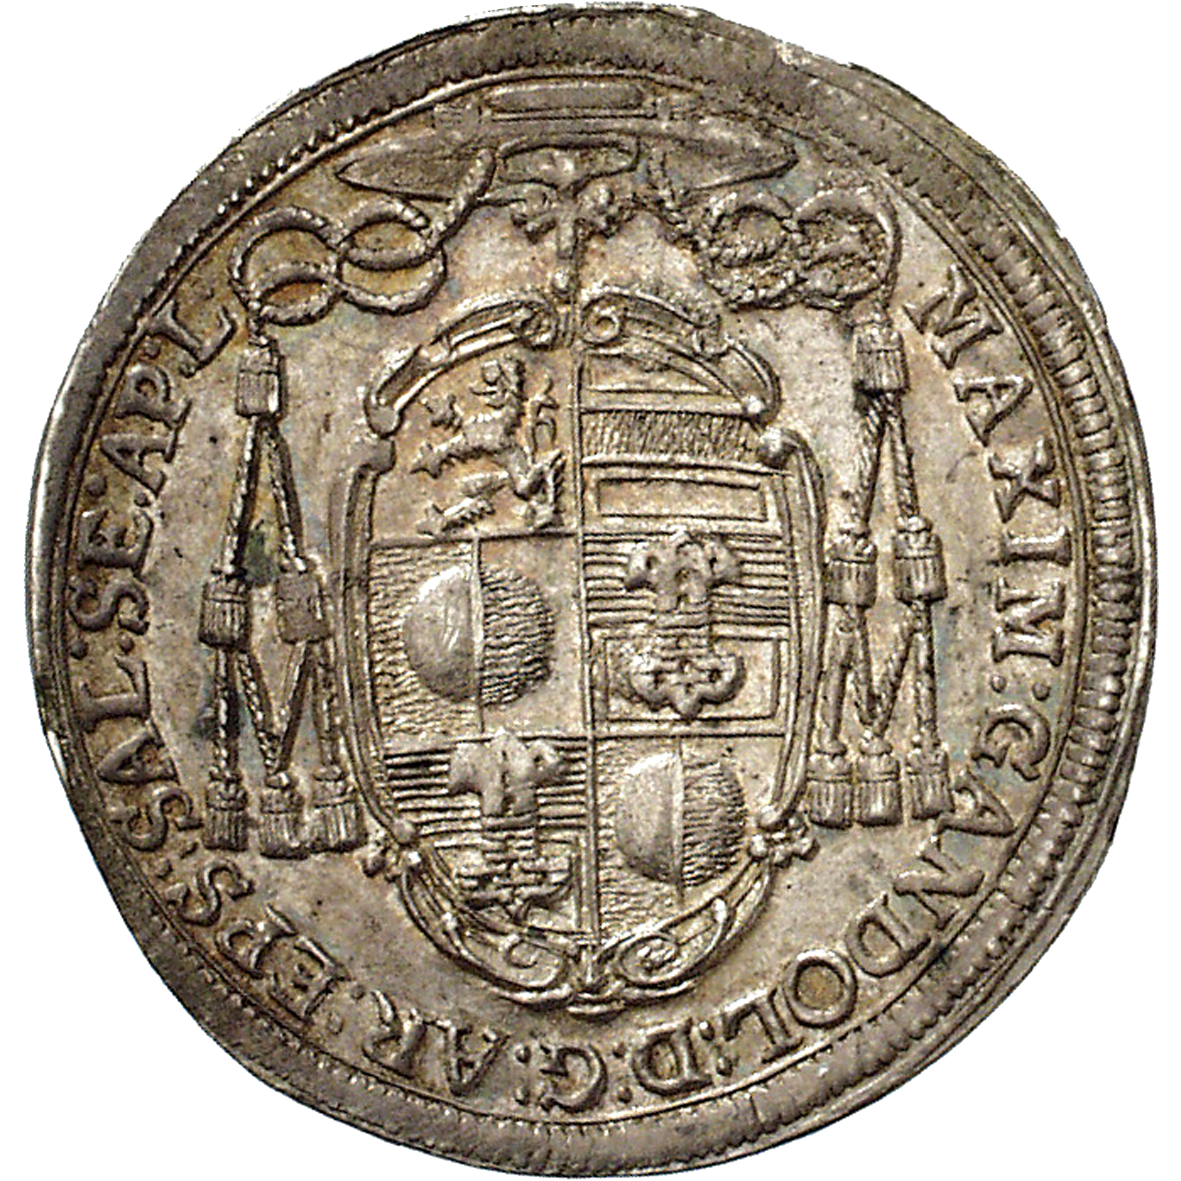 Heiliges Römisches Reich, Fürstbistum Salzburg, Max Gandolf von Kuenburg, 1/4 Taler 1672 (obverse)